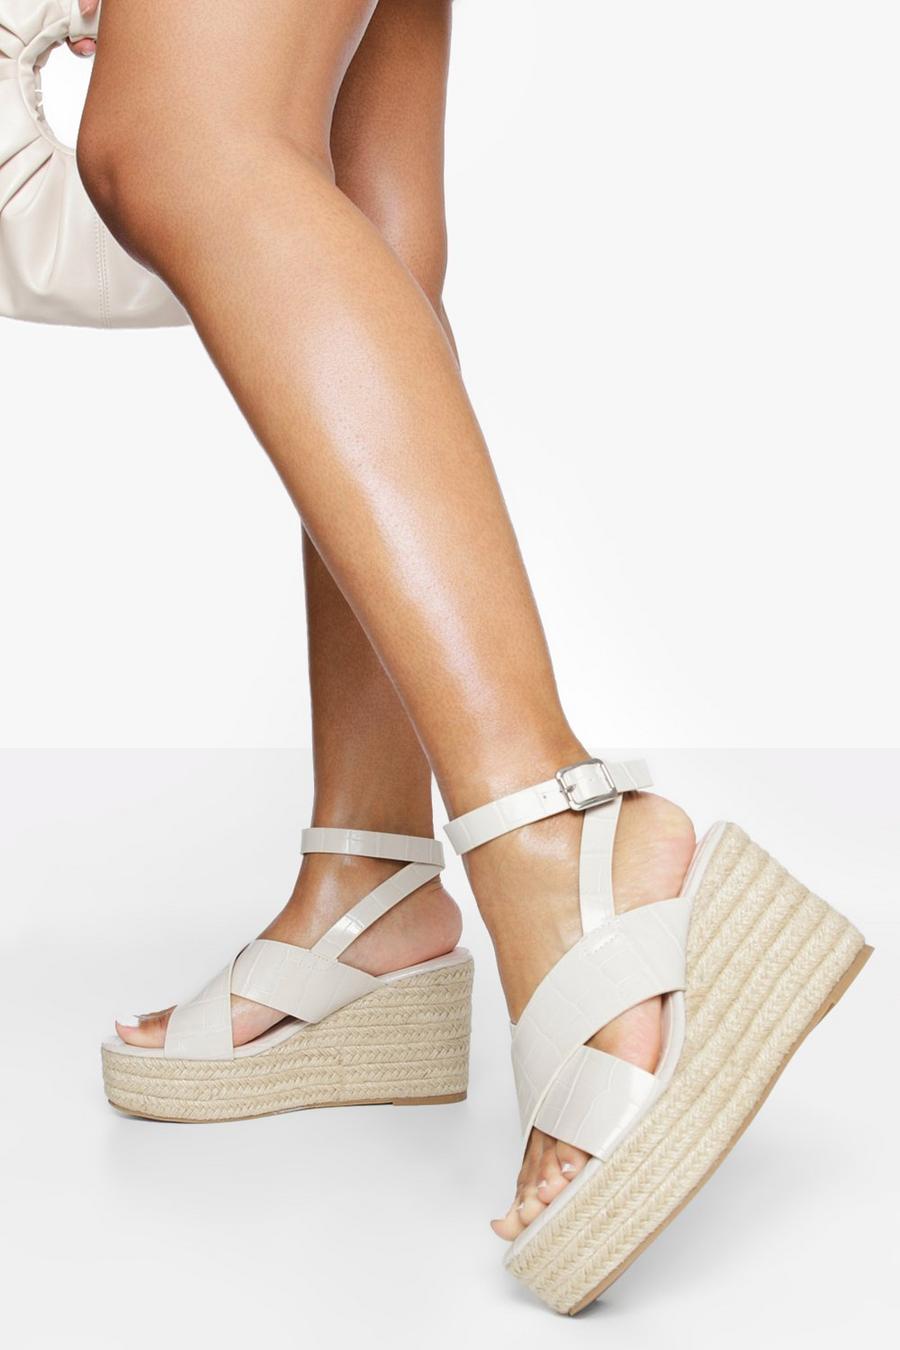 Sandales croco pieds larges à talons compensés, Off white